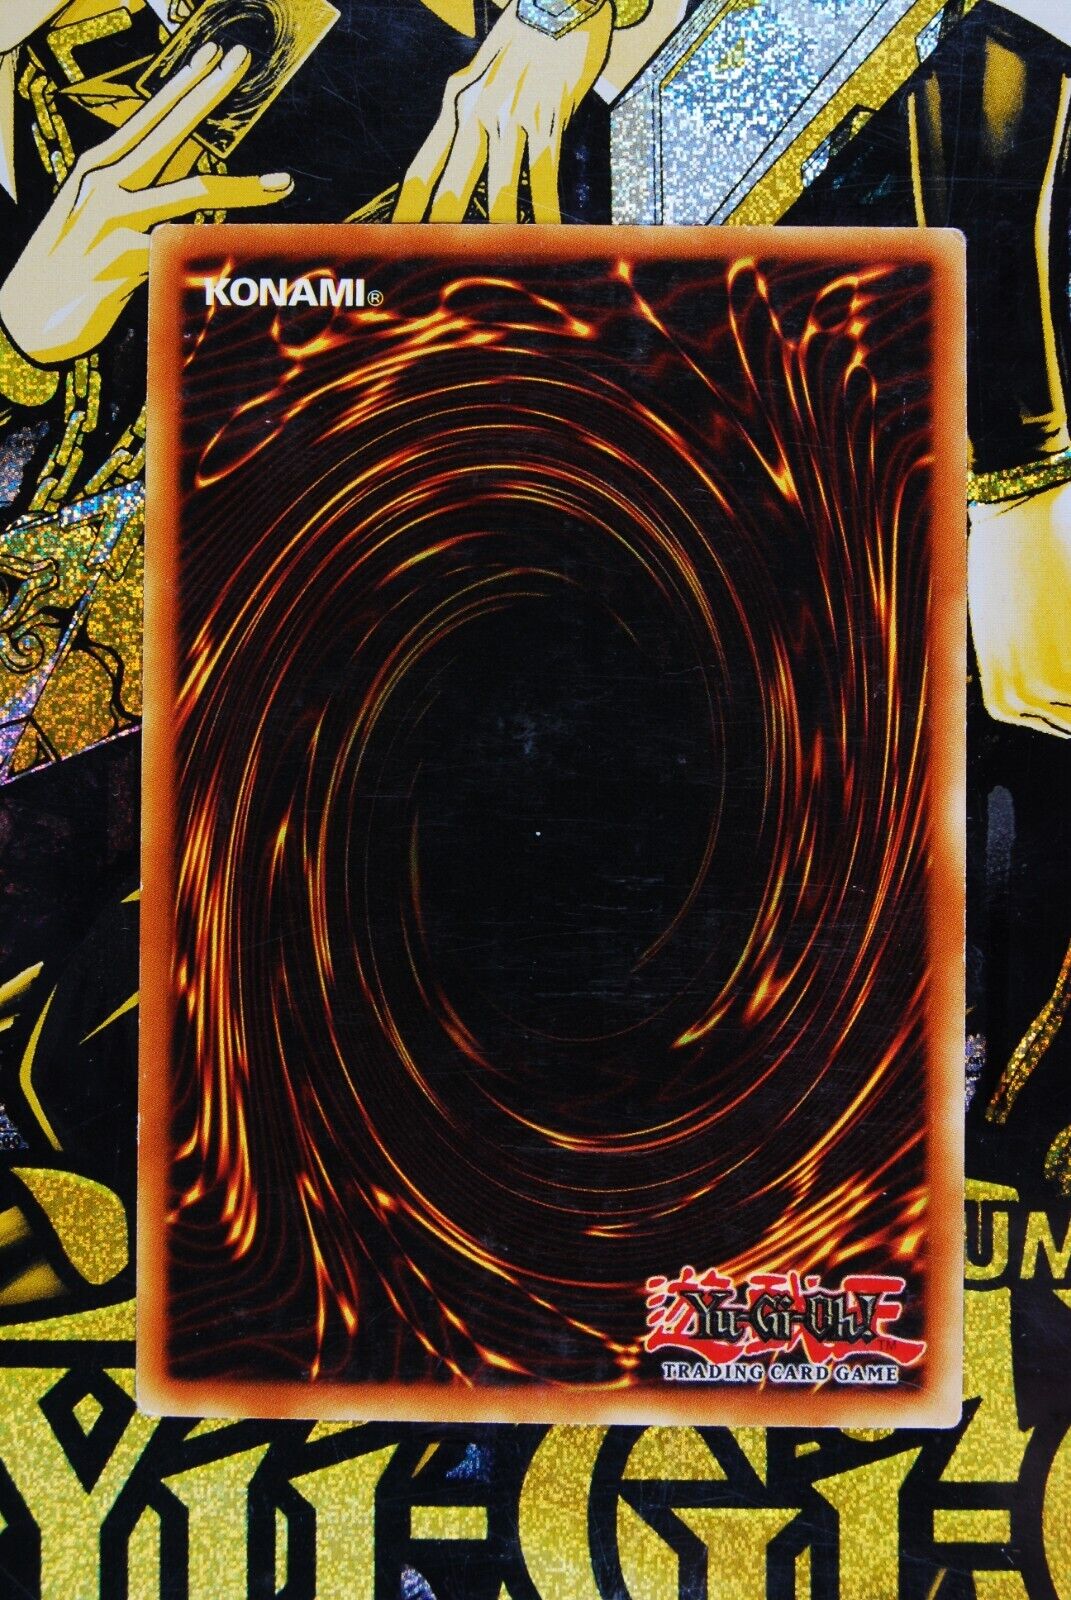 Ally of Justice Cyclone Creator DREV-EN092 1st Edition Secret Rare Yugioh Card